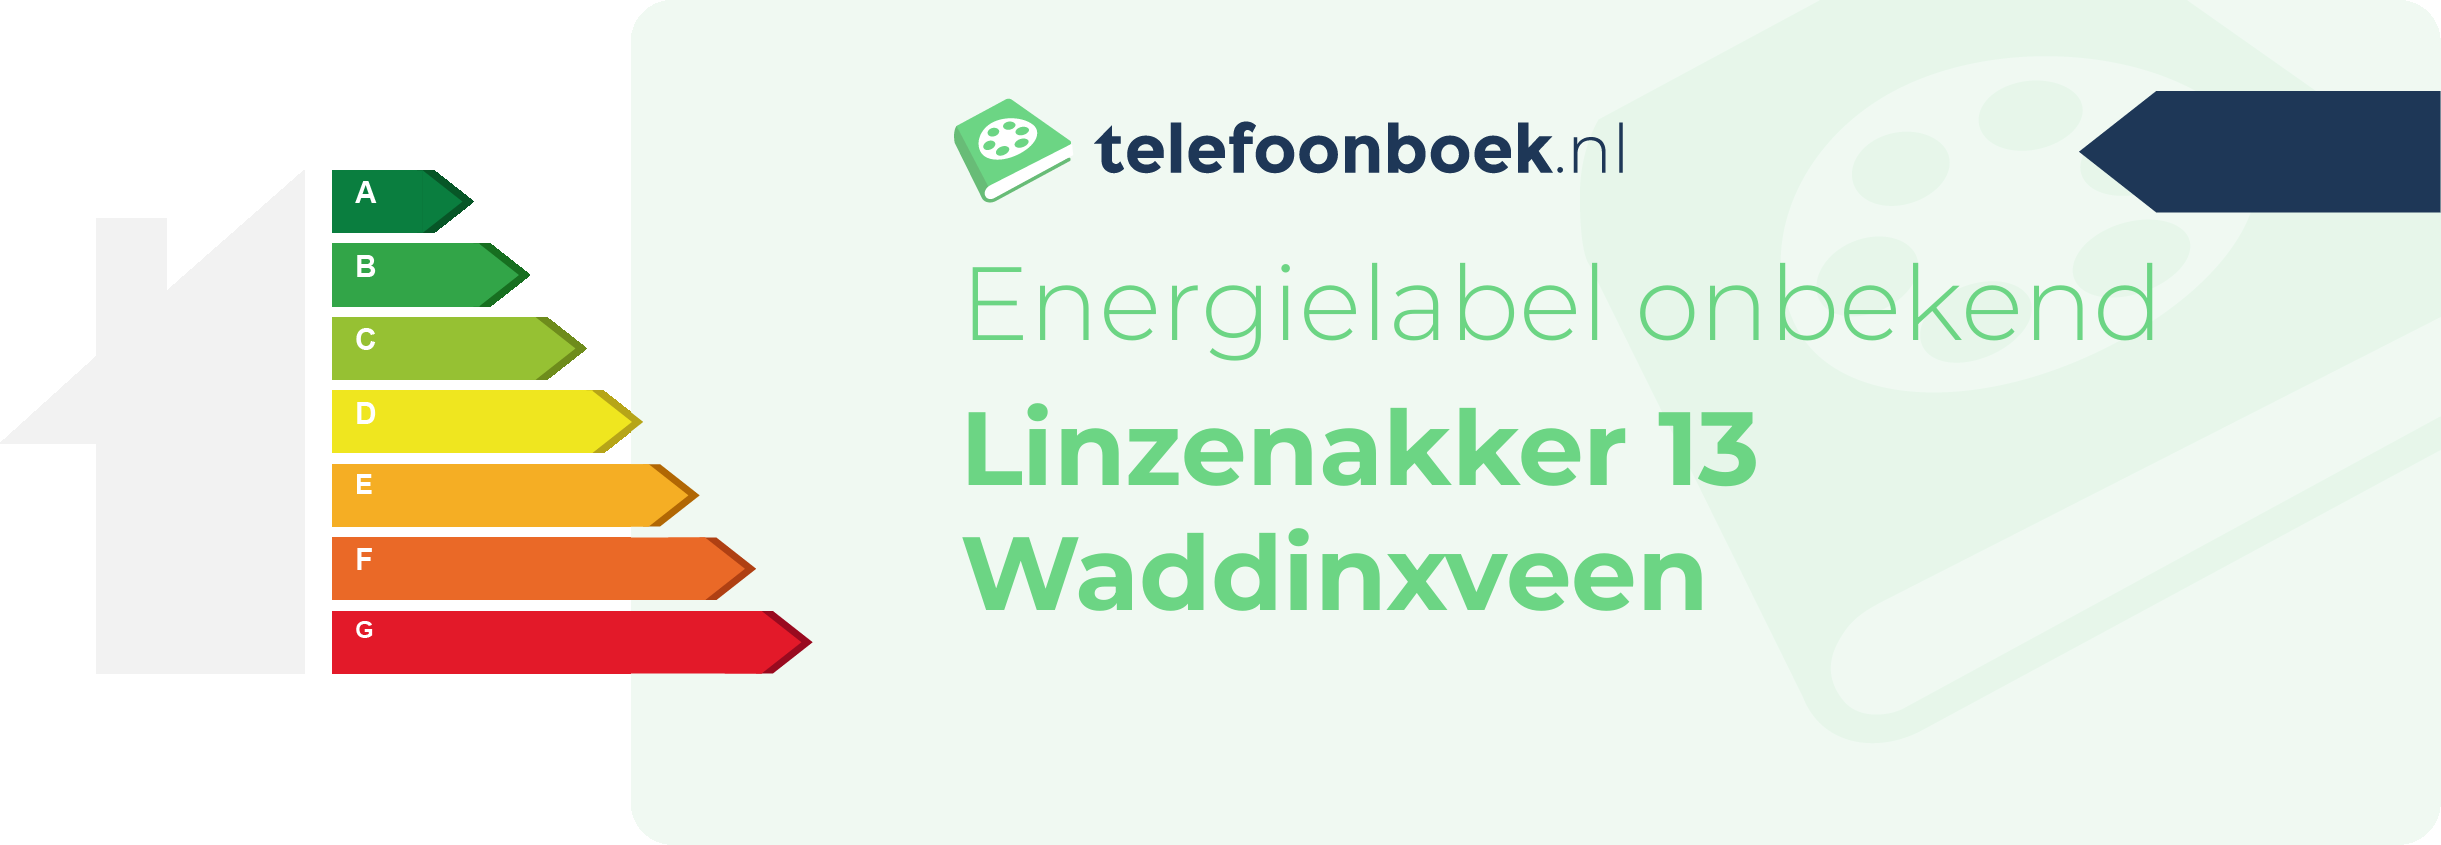 Energielabel Linzenakker 13 Waddinxveen